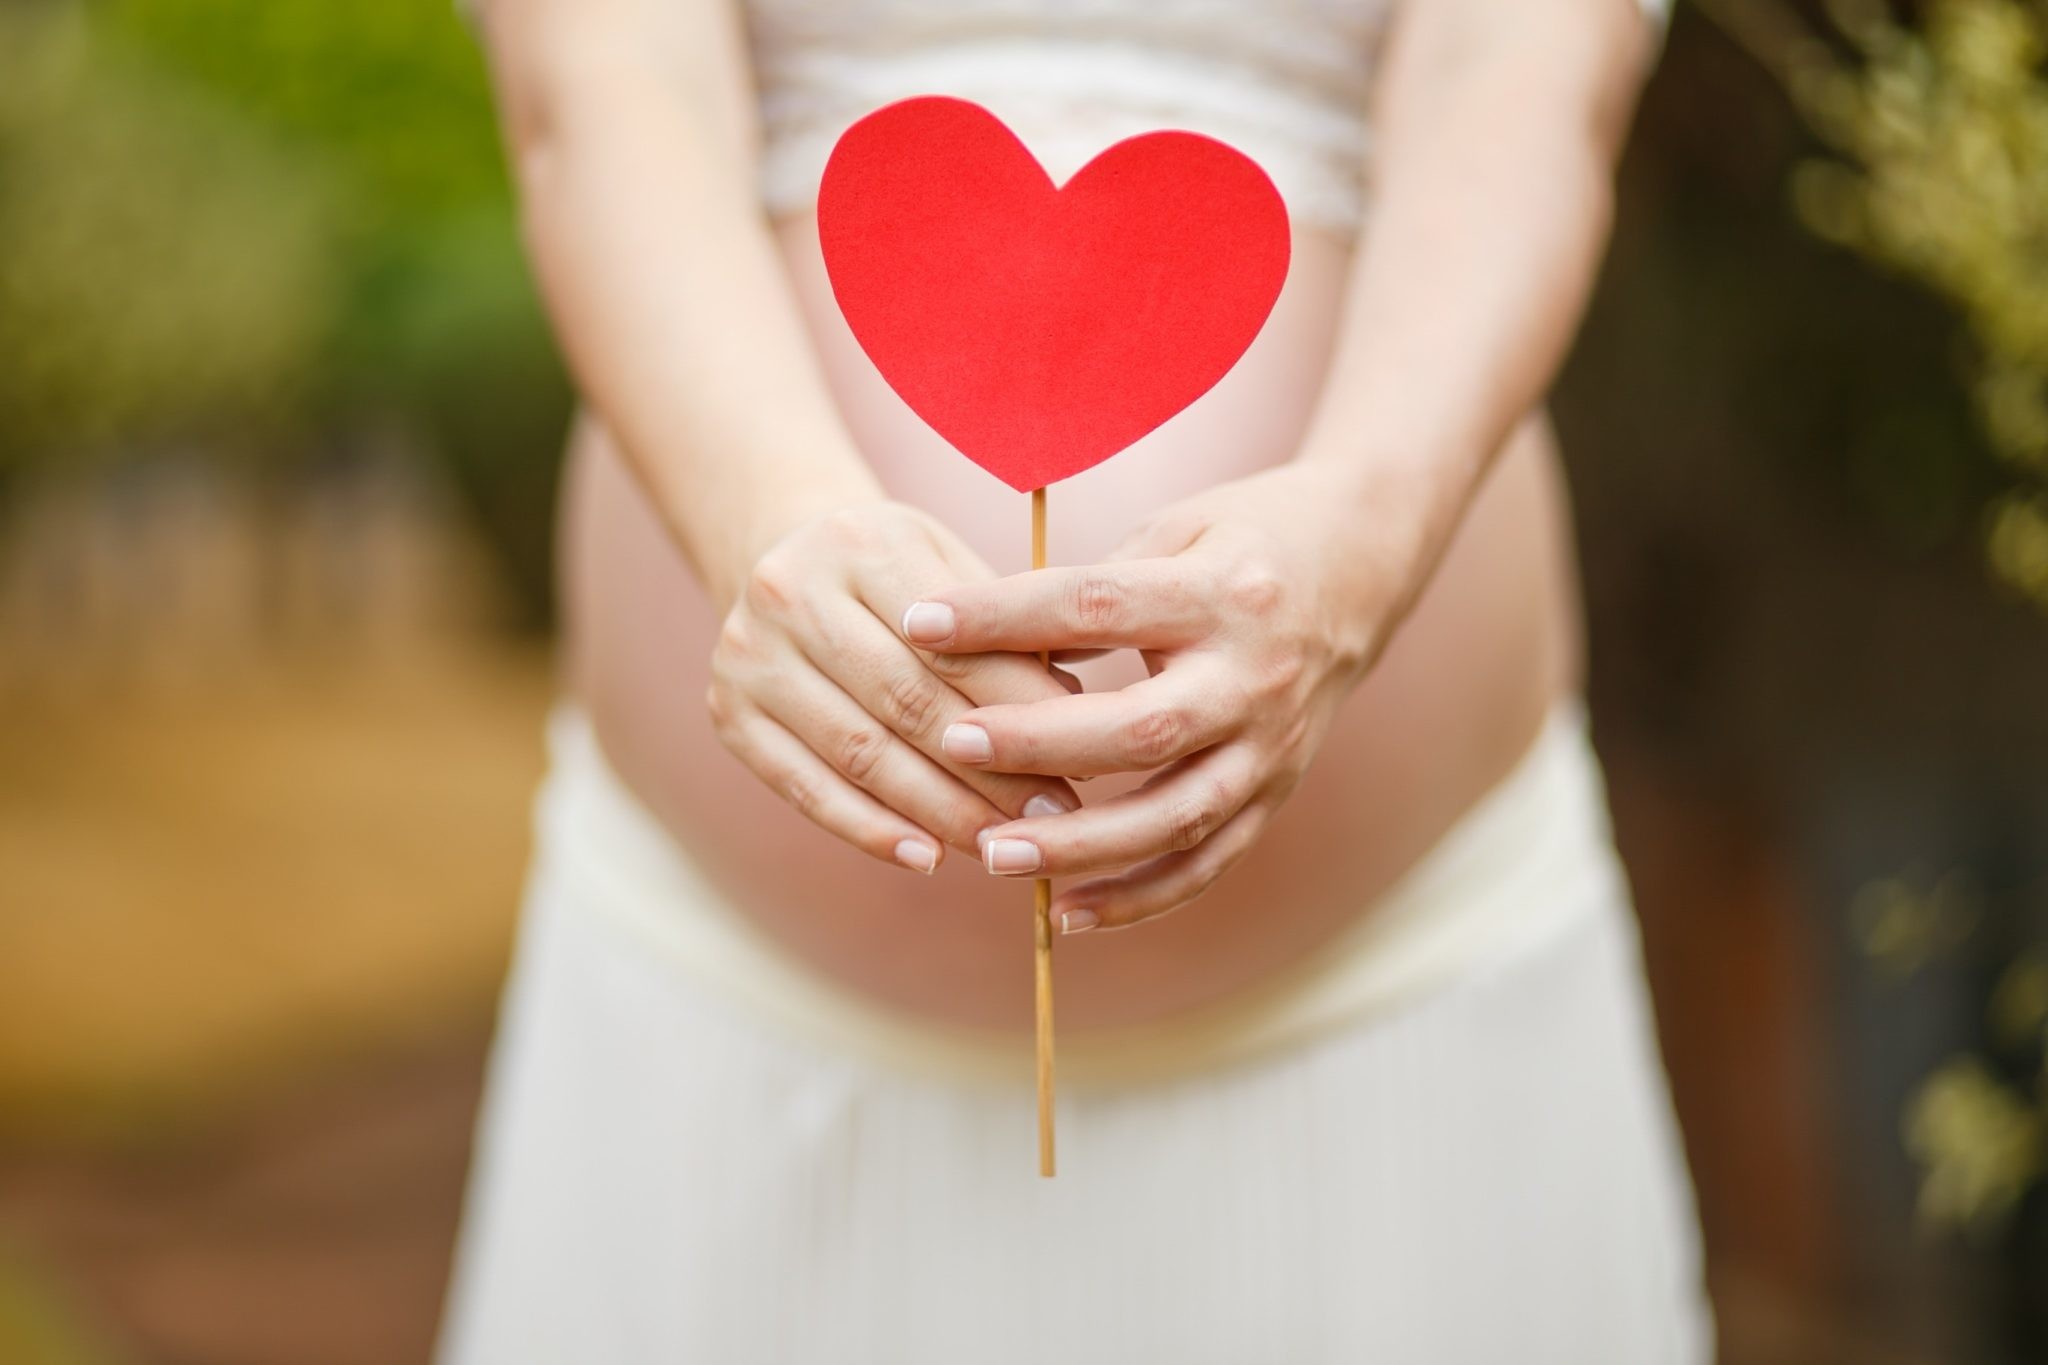 Узнать беременна ли я без тестов. Альтернативные способы самодиагностики на дому. Выделения кровянистого оттенка